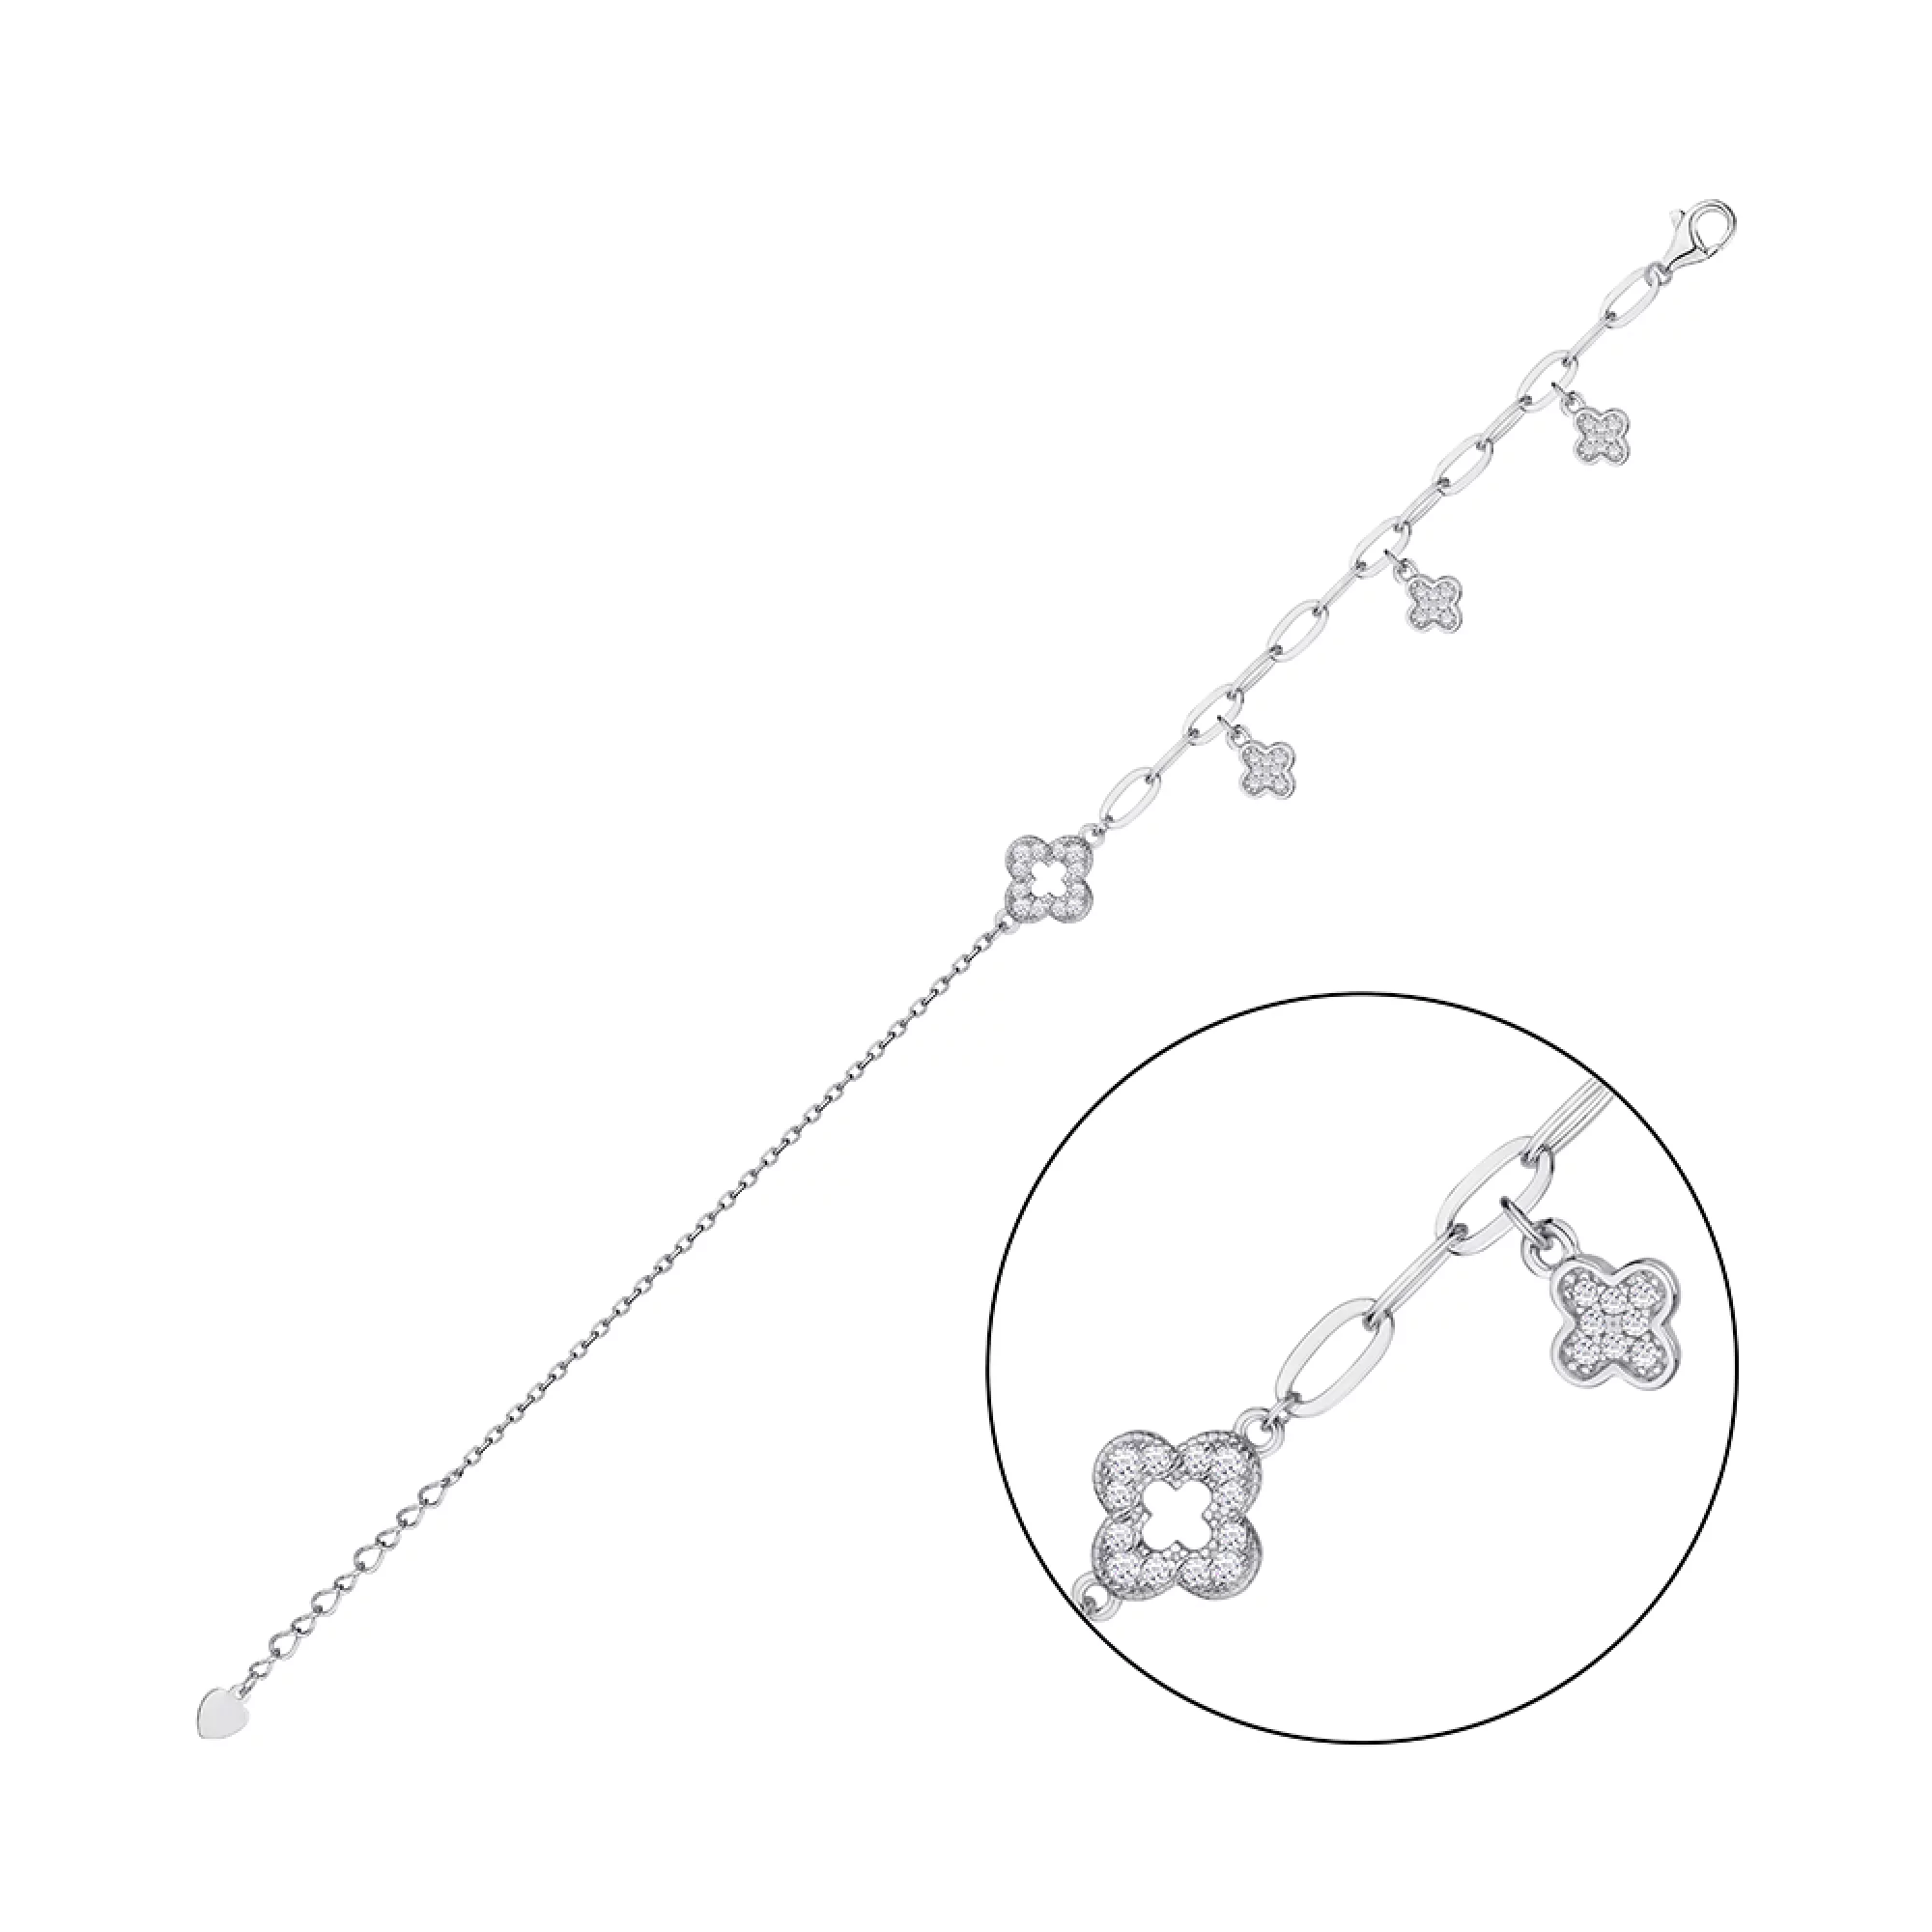 Срібний браслет "Конюшина" з фіанітом якірне плетіння - 1297407 – зображення 2